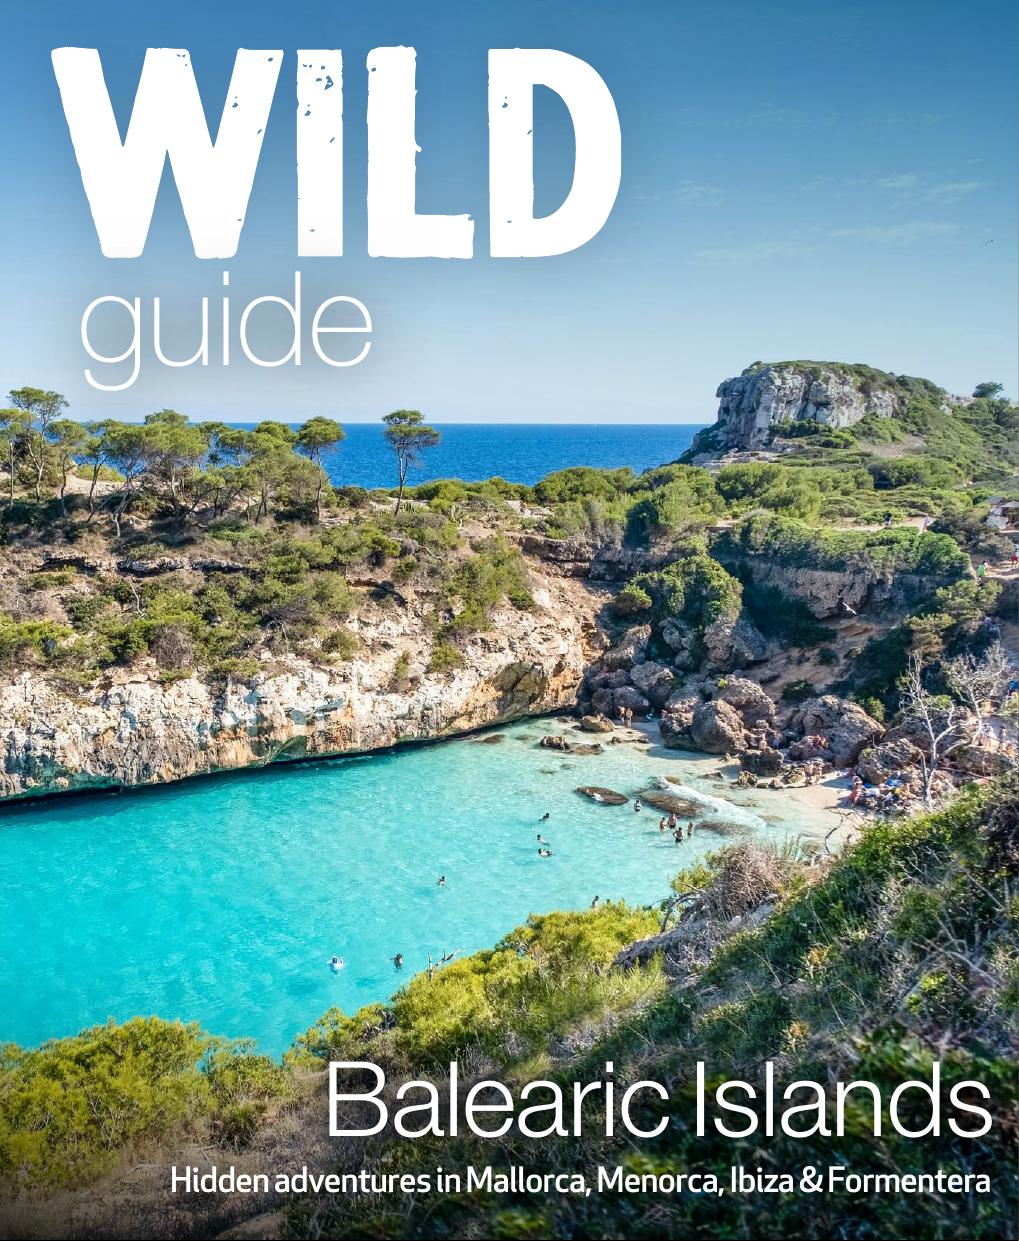 Wild Guide Balearic Islands: Hidden Adventures in Mallorca, Menorca, Ibiza & Formentera by Anna Deacon